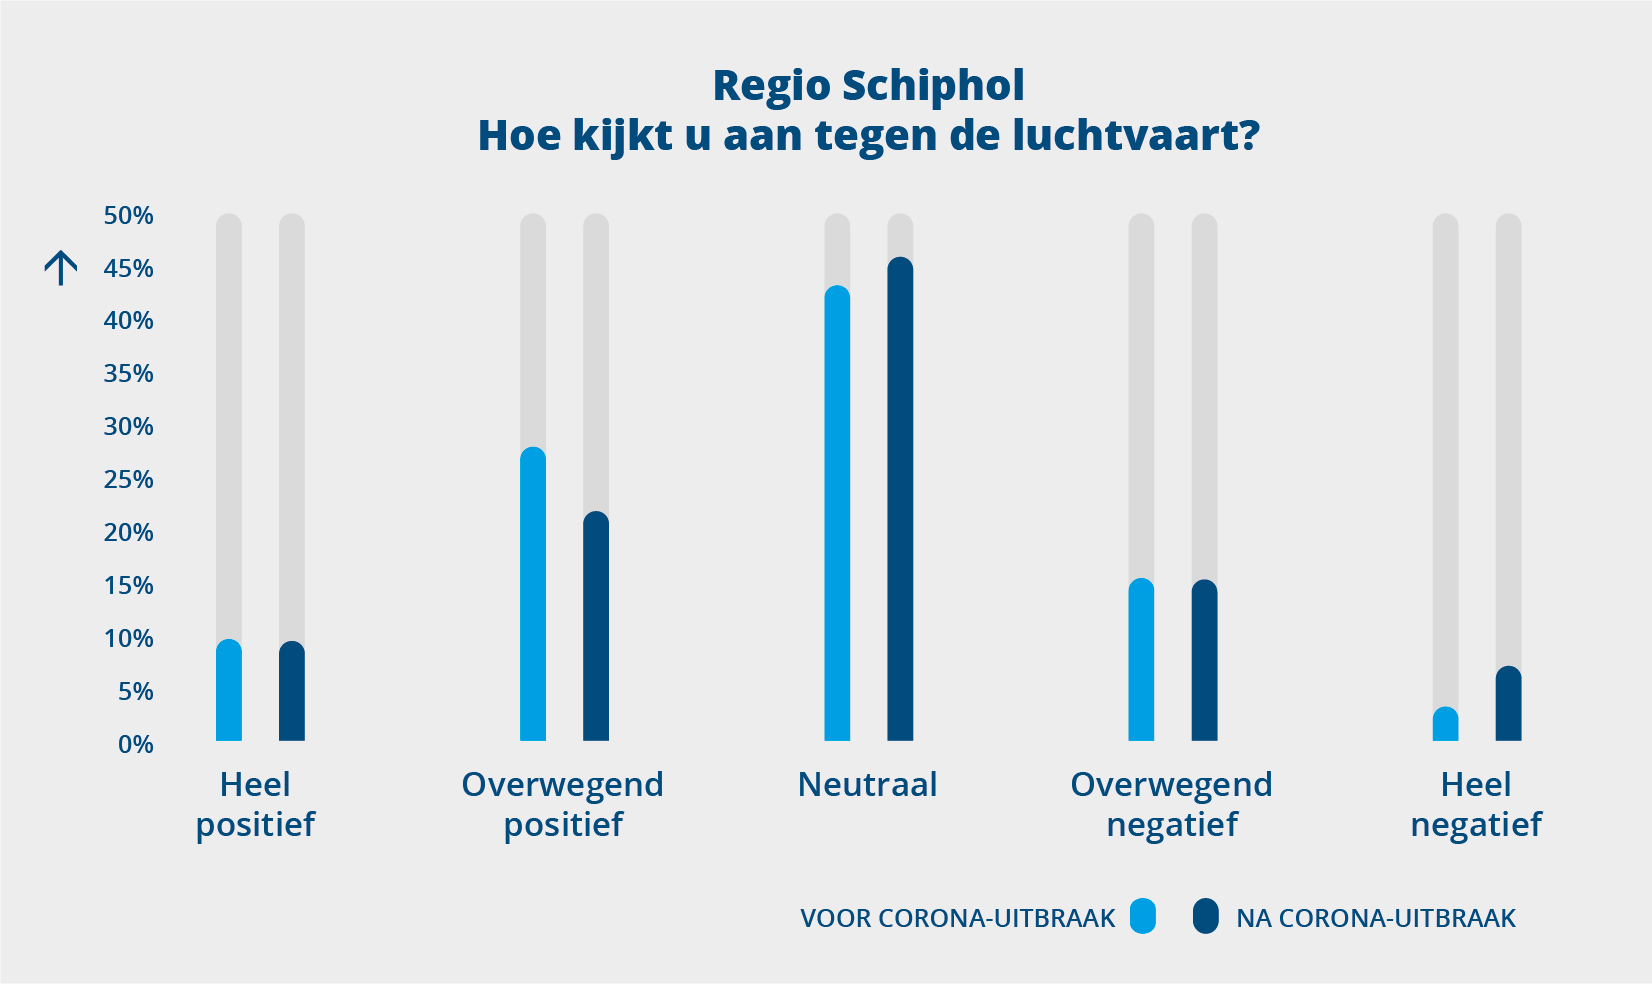 Regio Schiphol: Hoe kijkt u aan tegen de luchtvaart?